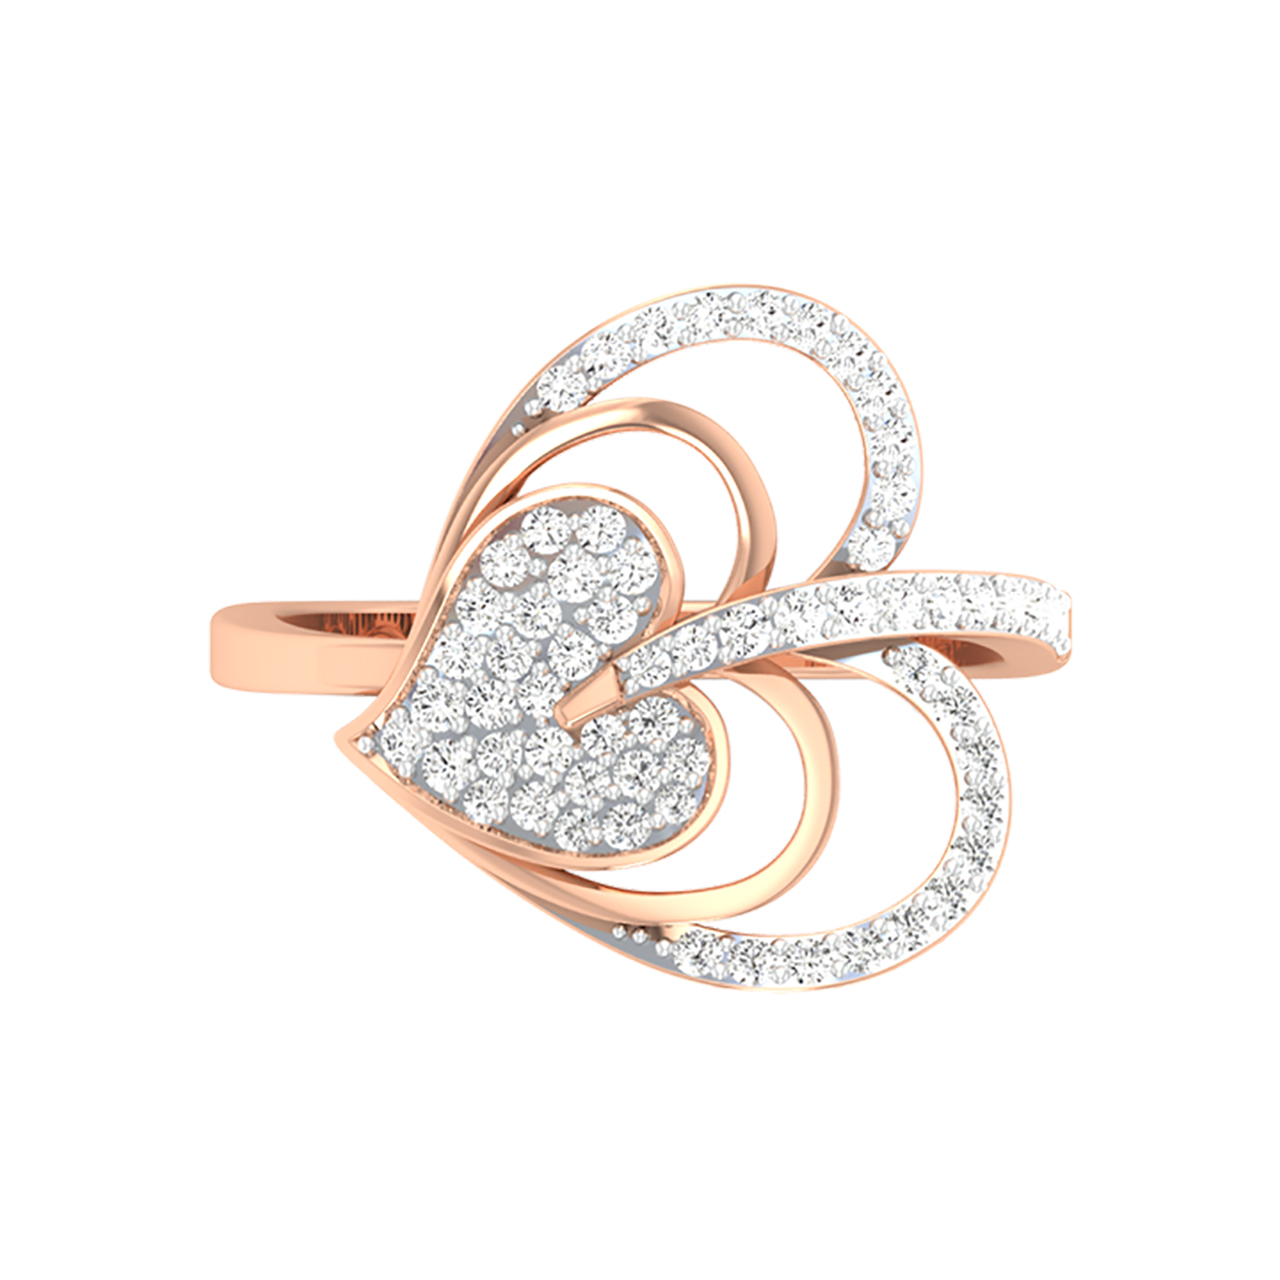 Braid Round Diamond Engagement Ring